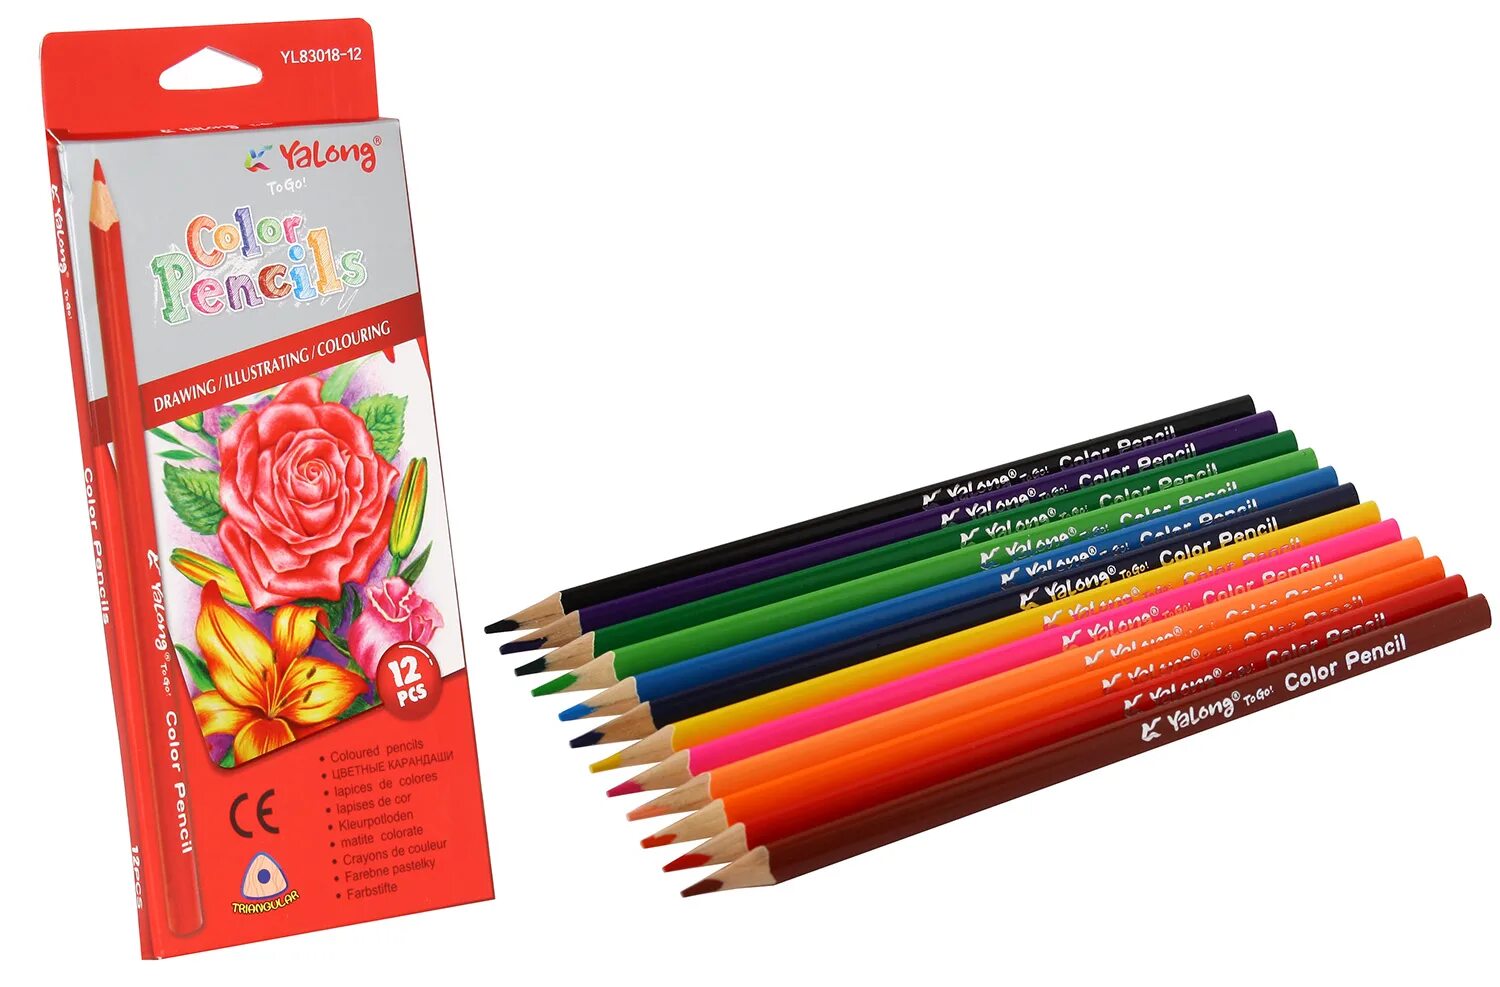 Цветные карандаши Yalong to go. Карандаши цветные Yalong 12 цветов. Карандаши цветные 12цв "Supersoft. Замки". Yalong Color Pencil to go! Yl81500 трехгранные.